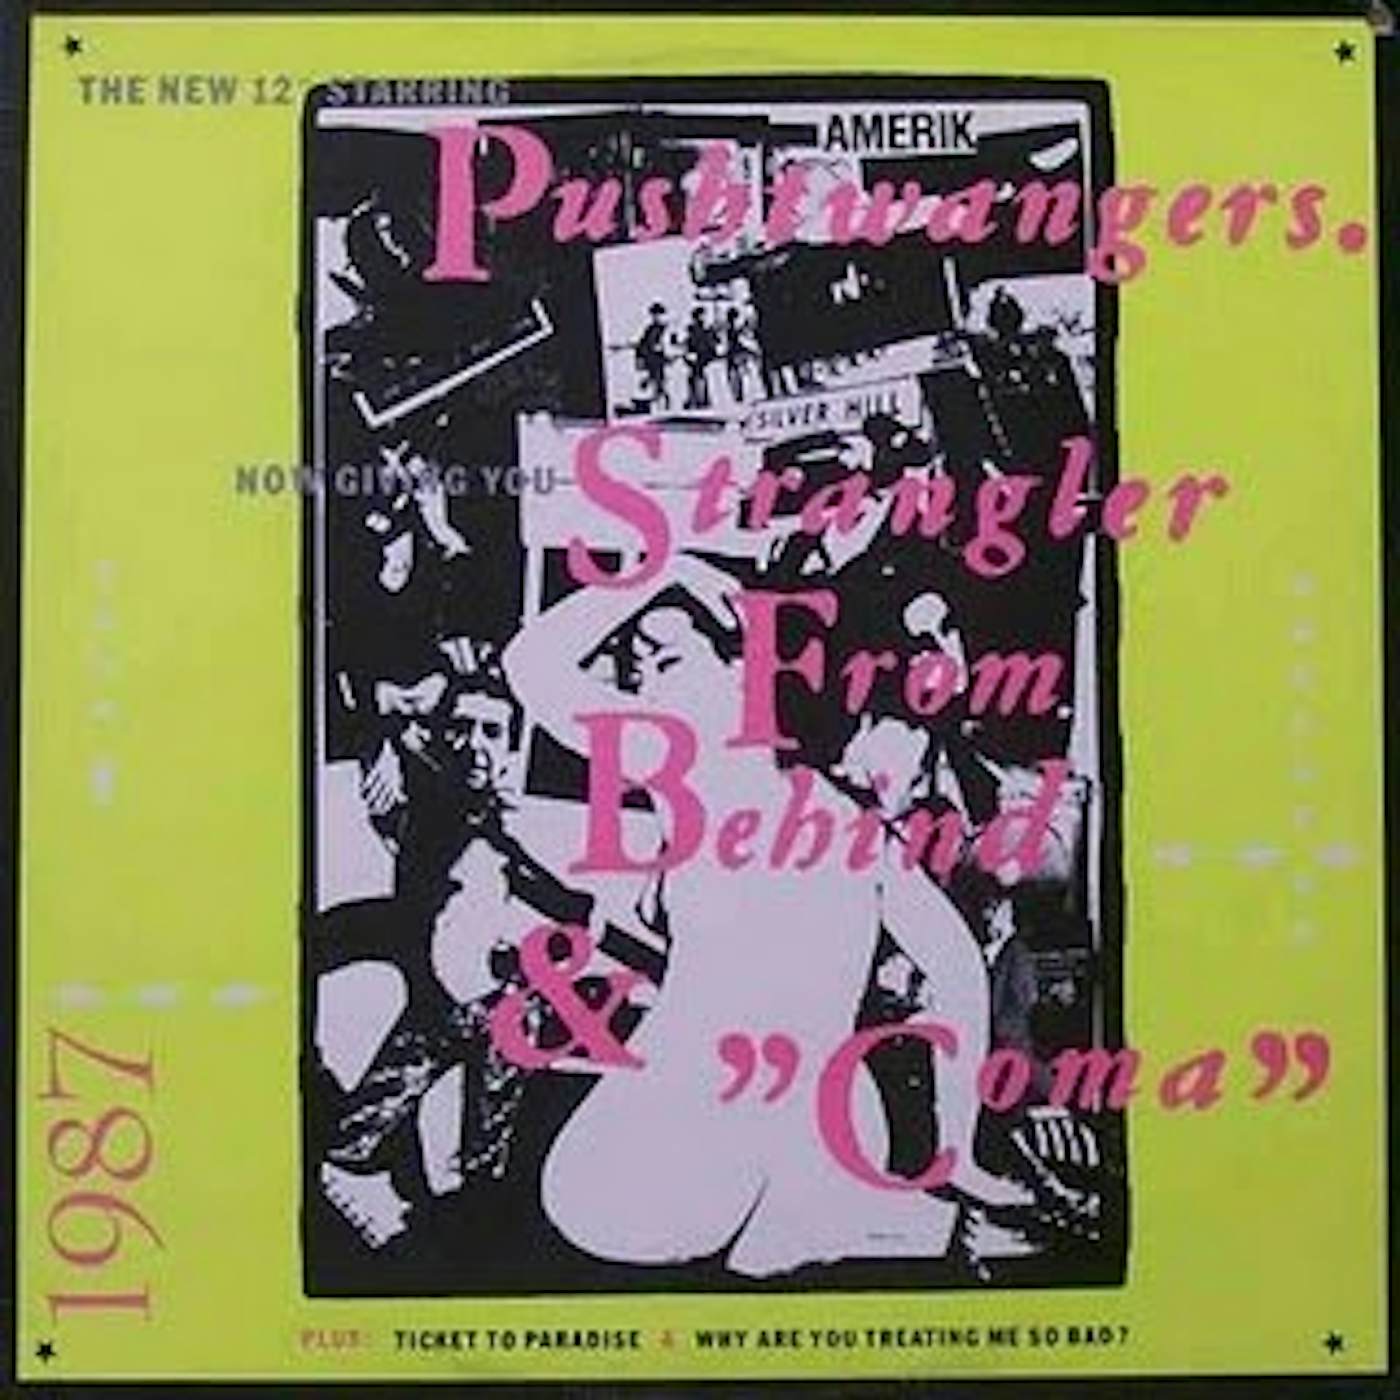 Pushtwangers Strangler From Behind Vinyl Record